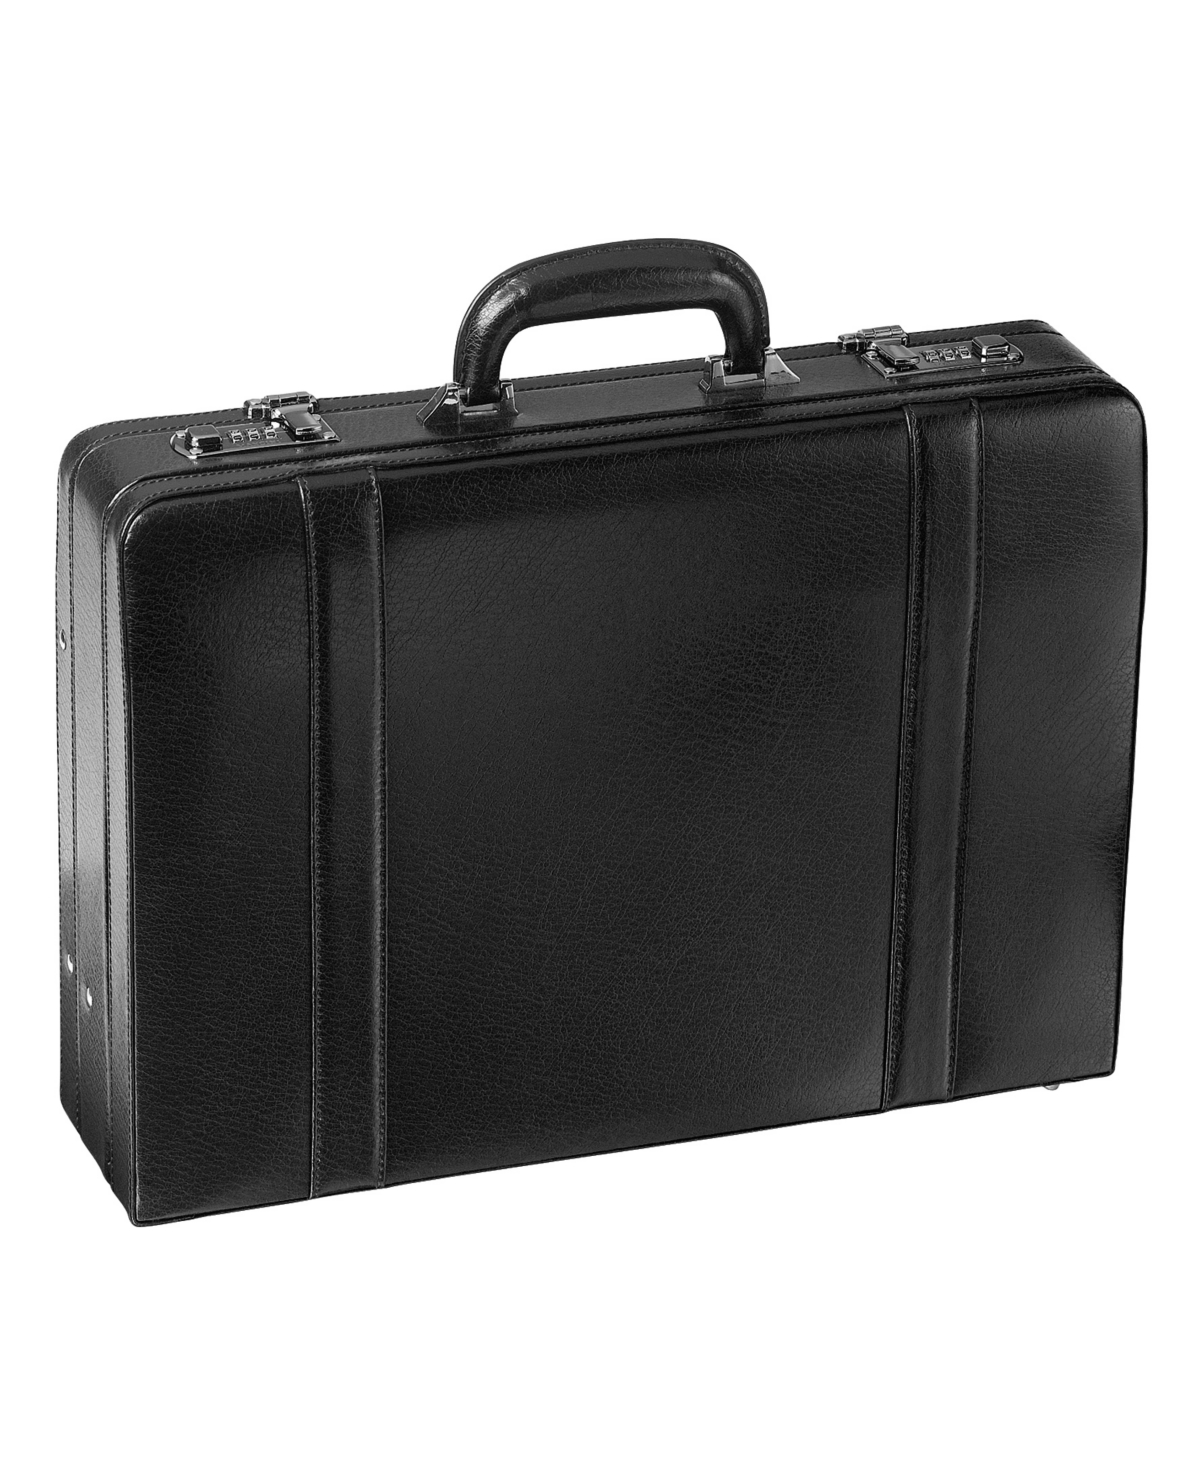 Business Collection Expandable Attache Case - Black